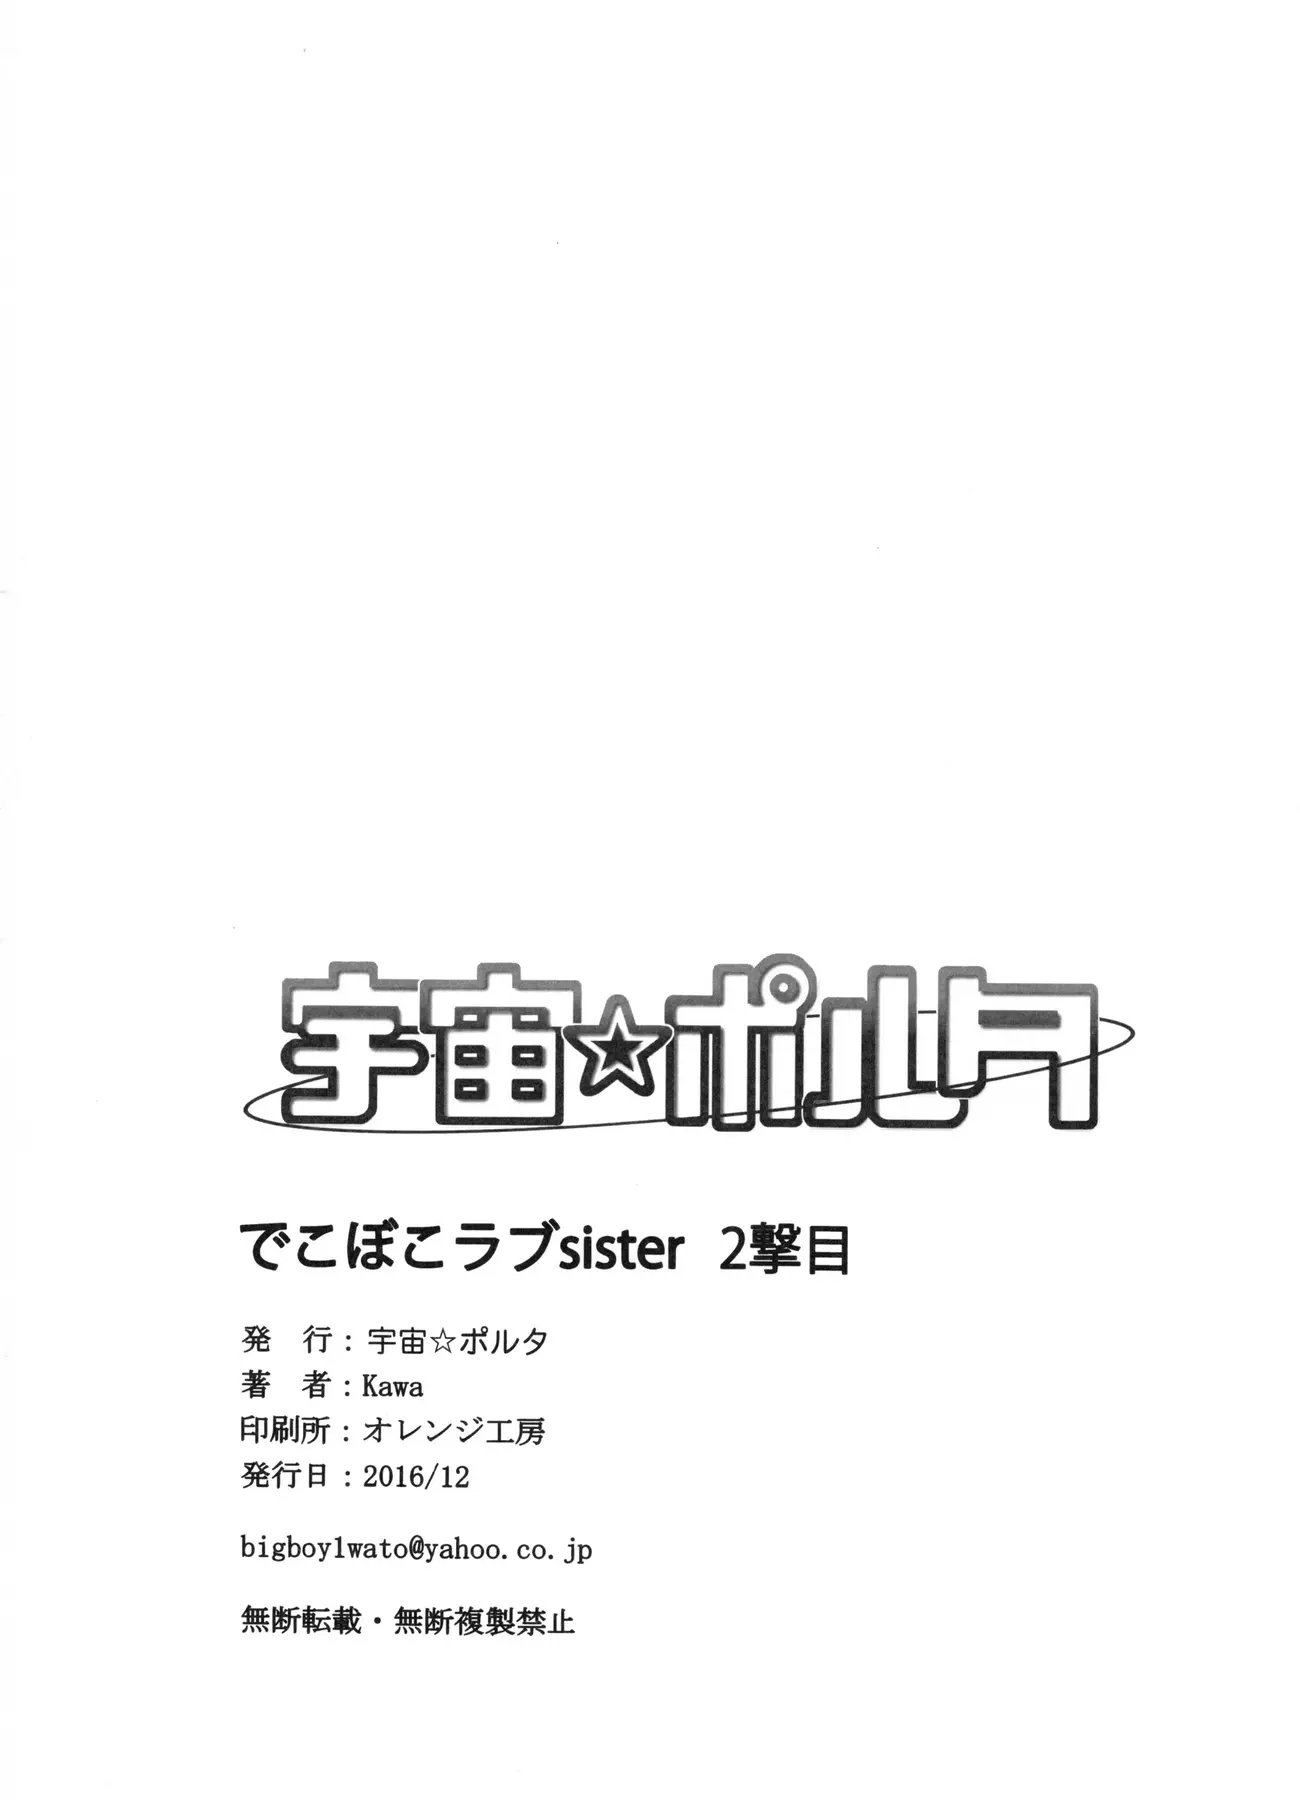 Dekoboko Love Sister 2-gekime! - Foto 25